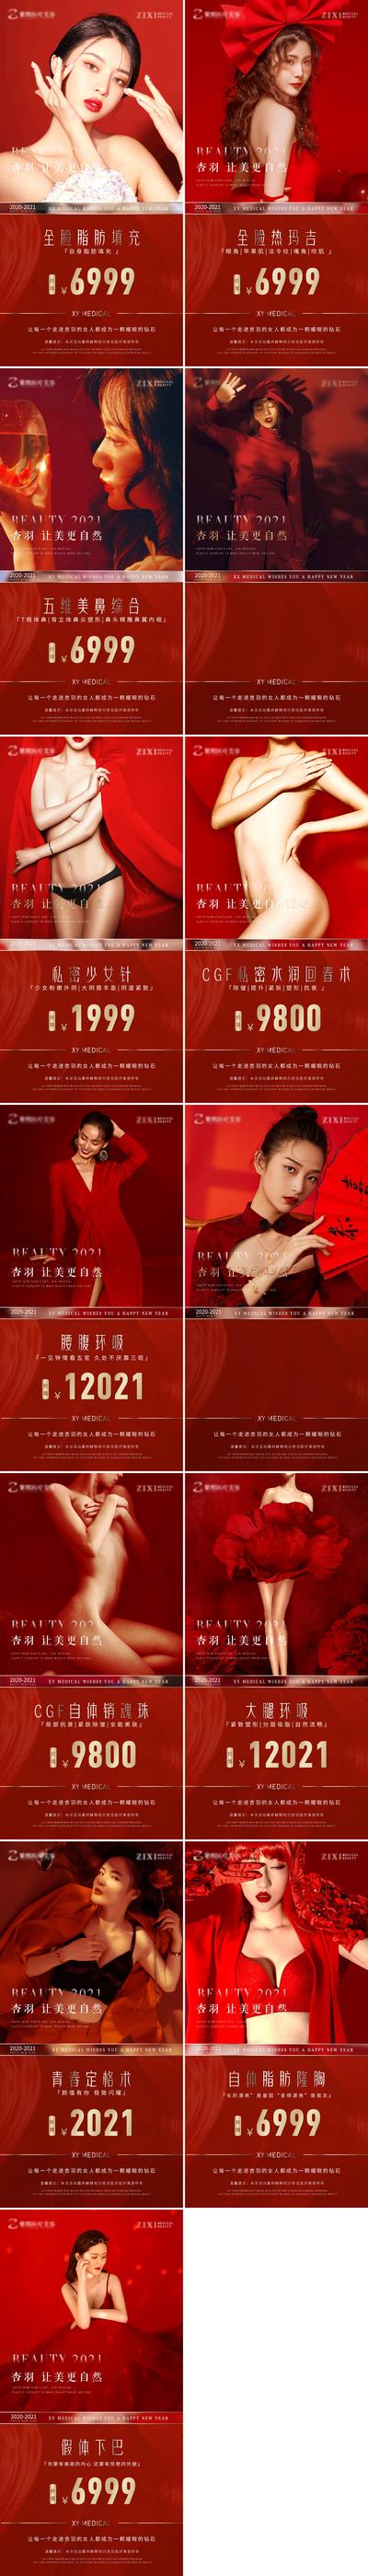 南门网 海报 医美 系列 新年 跨年 专题 红金 宣传 高端 时尚 精致 模特 